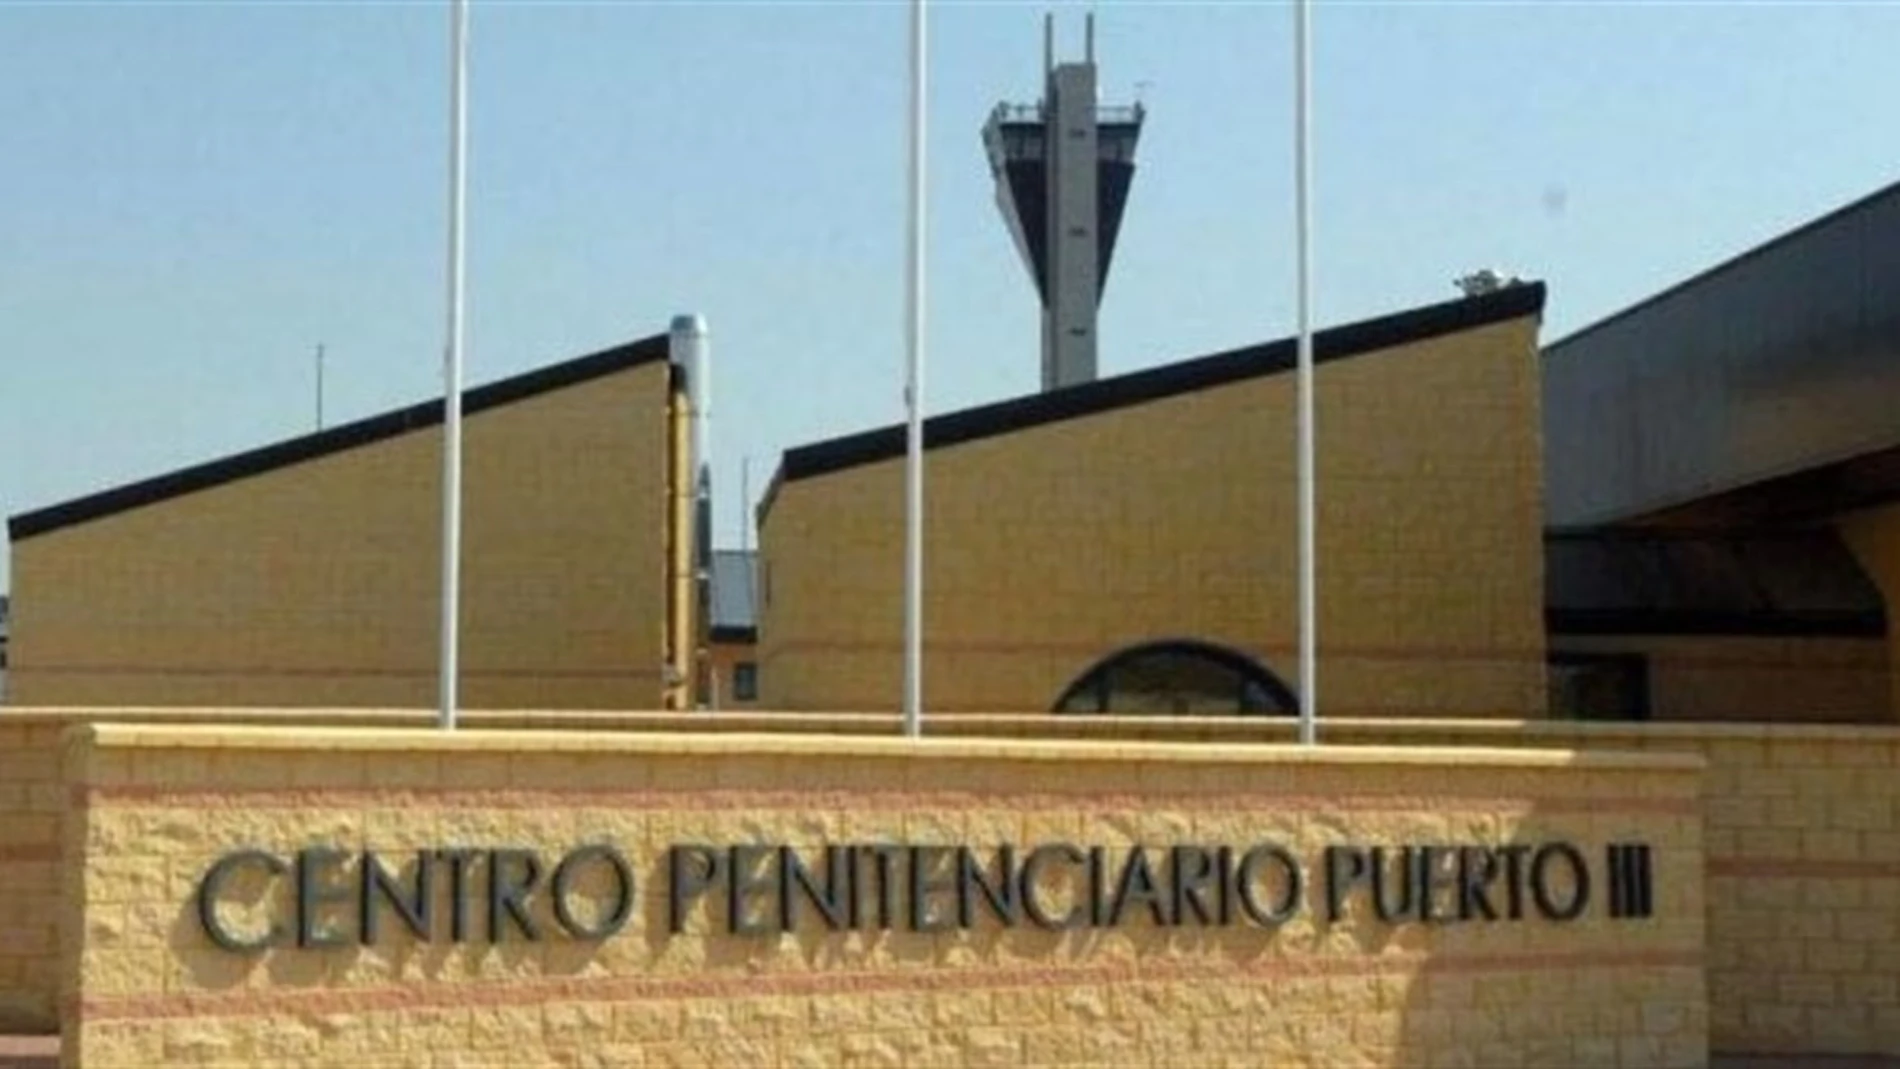 Prisión Puerto III de la localidad gaditana /Foto: EP